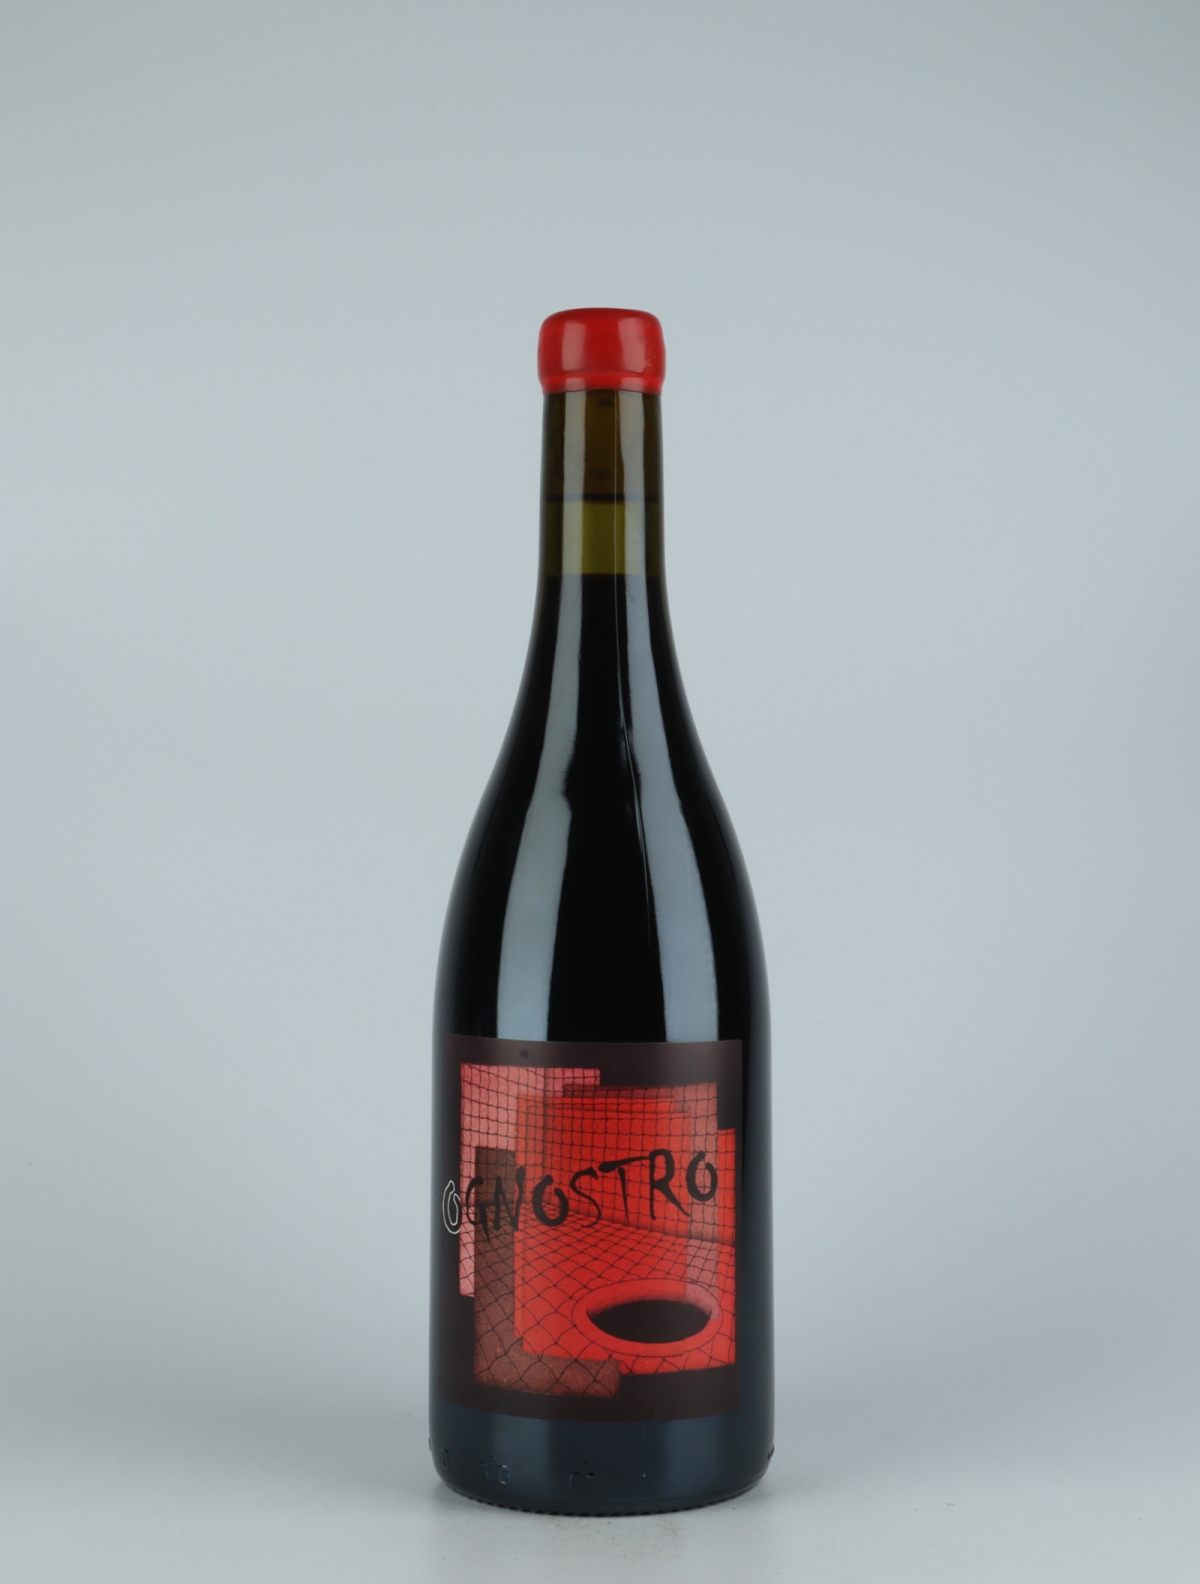 En flaske 2018 Ognostro Rosso Rødvin fra Marco Tinessa, Campanien i Italien